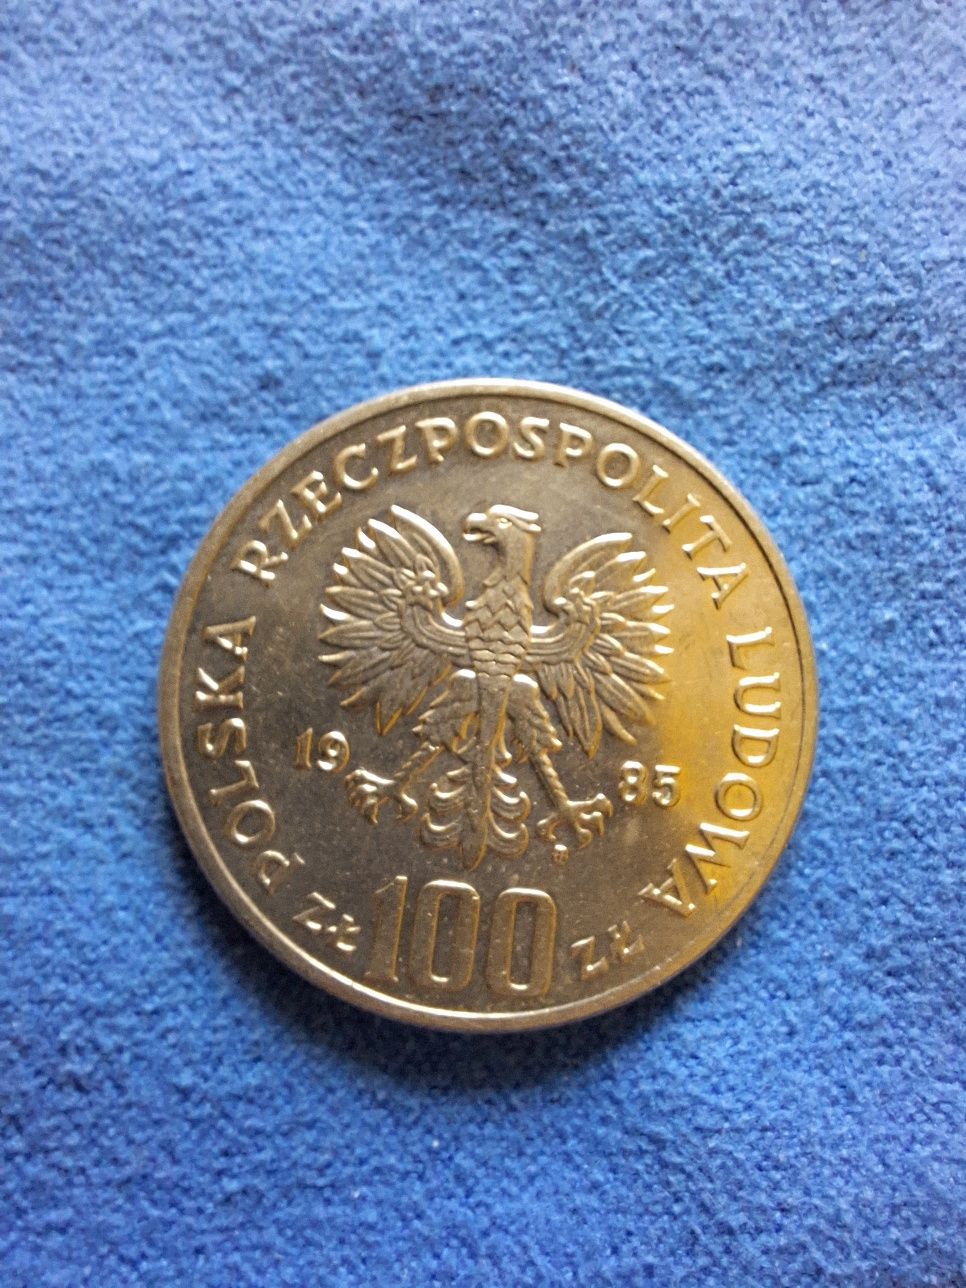 Moneta Przemysław 2 1985 r. 100 zł